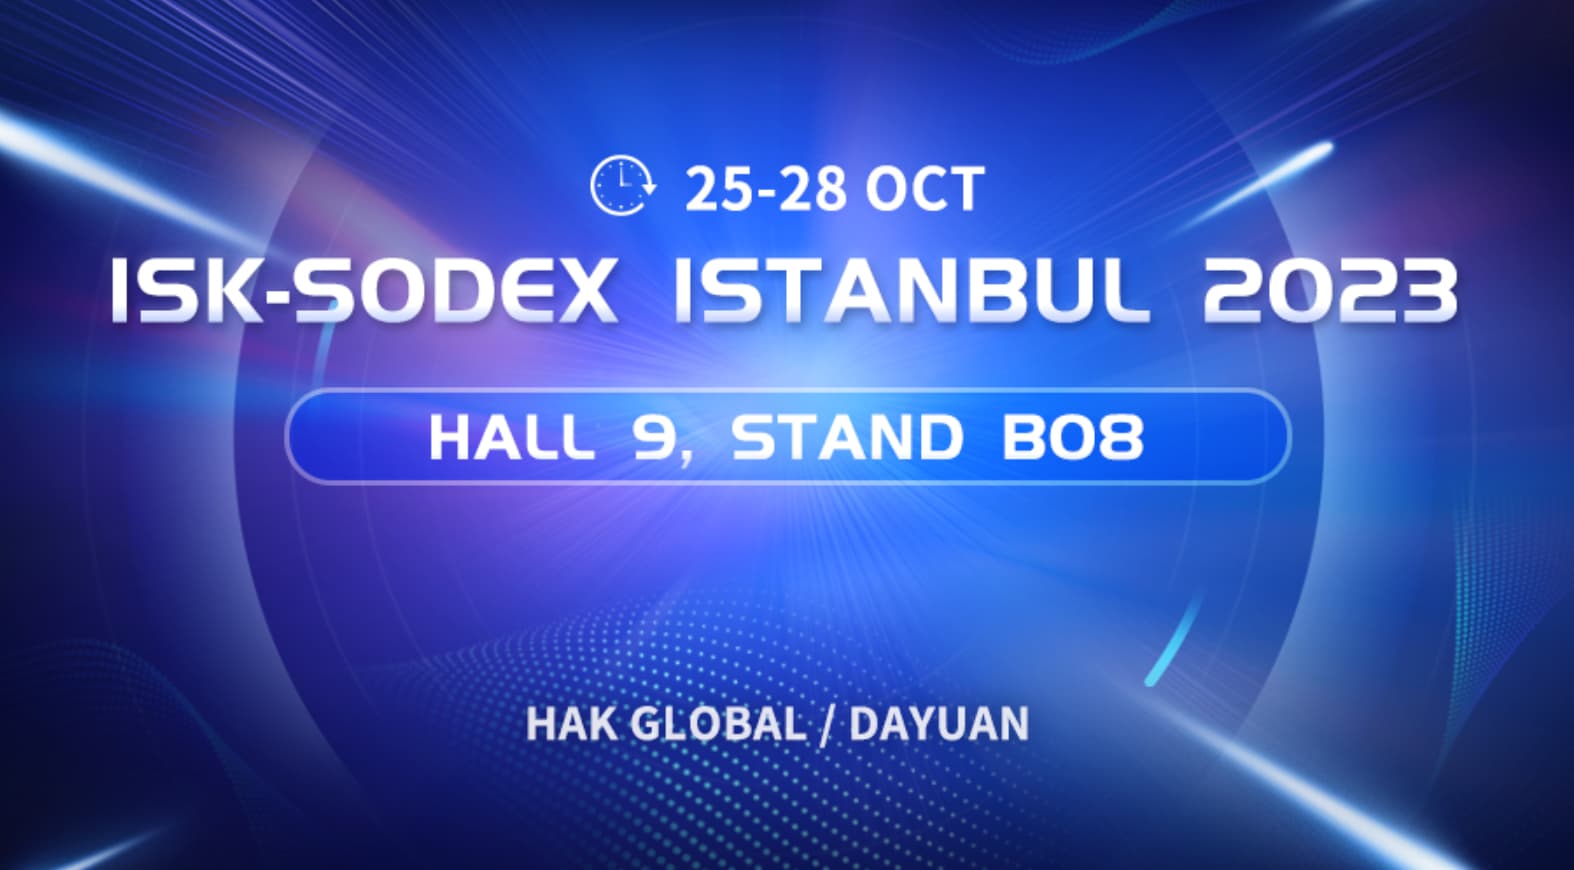 دعوة المعرض | لقاء شينهو في ISK-SODEX ISTANBUL 2023
    